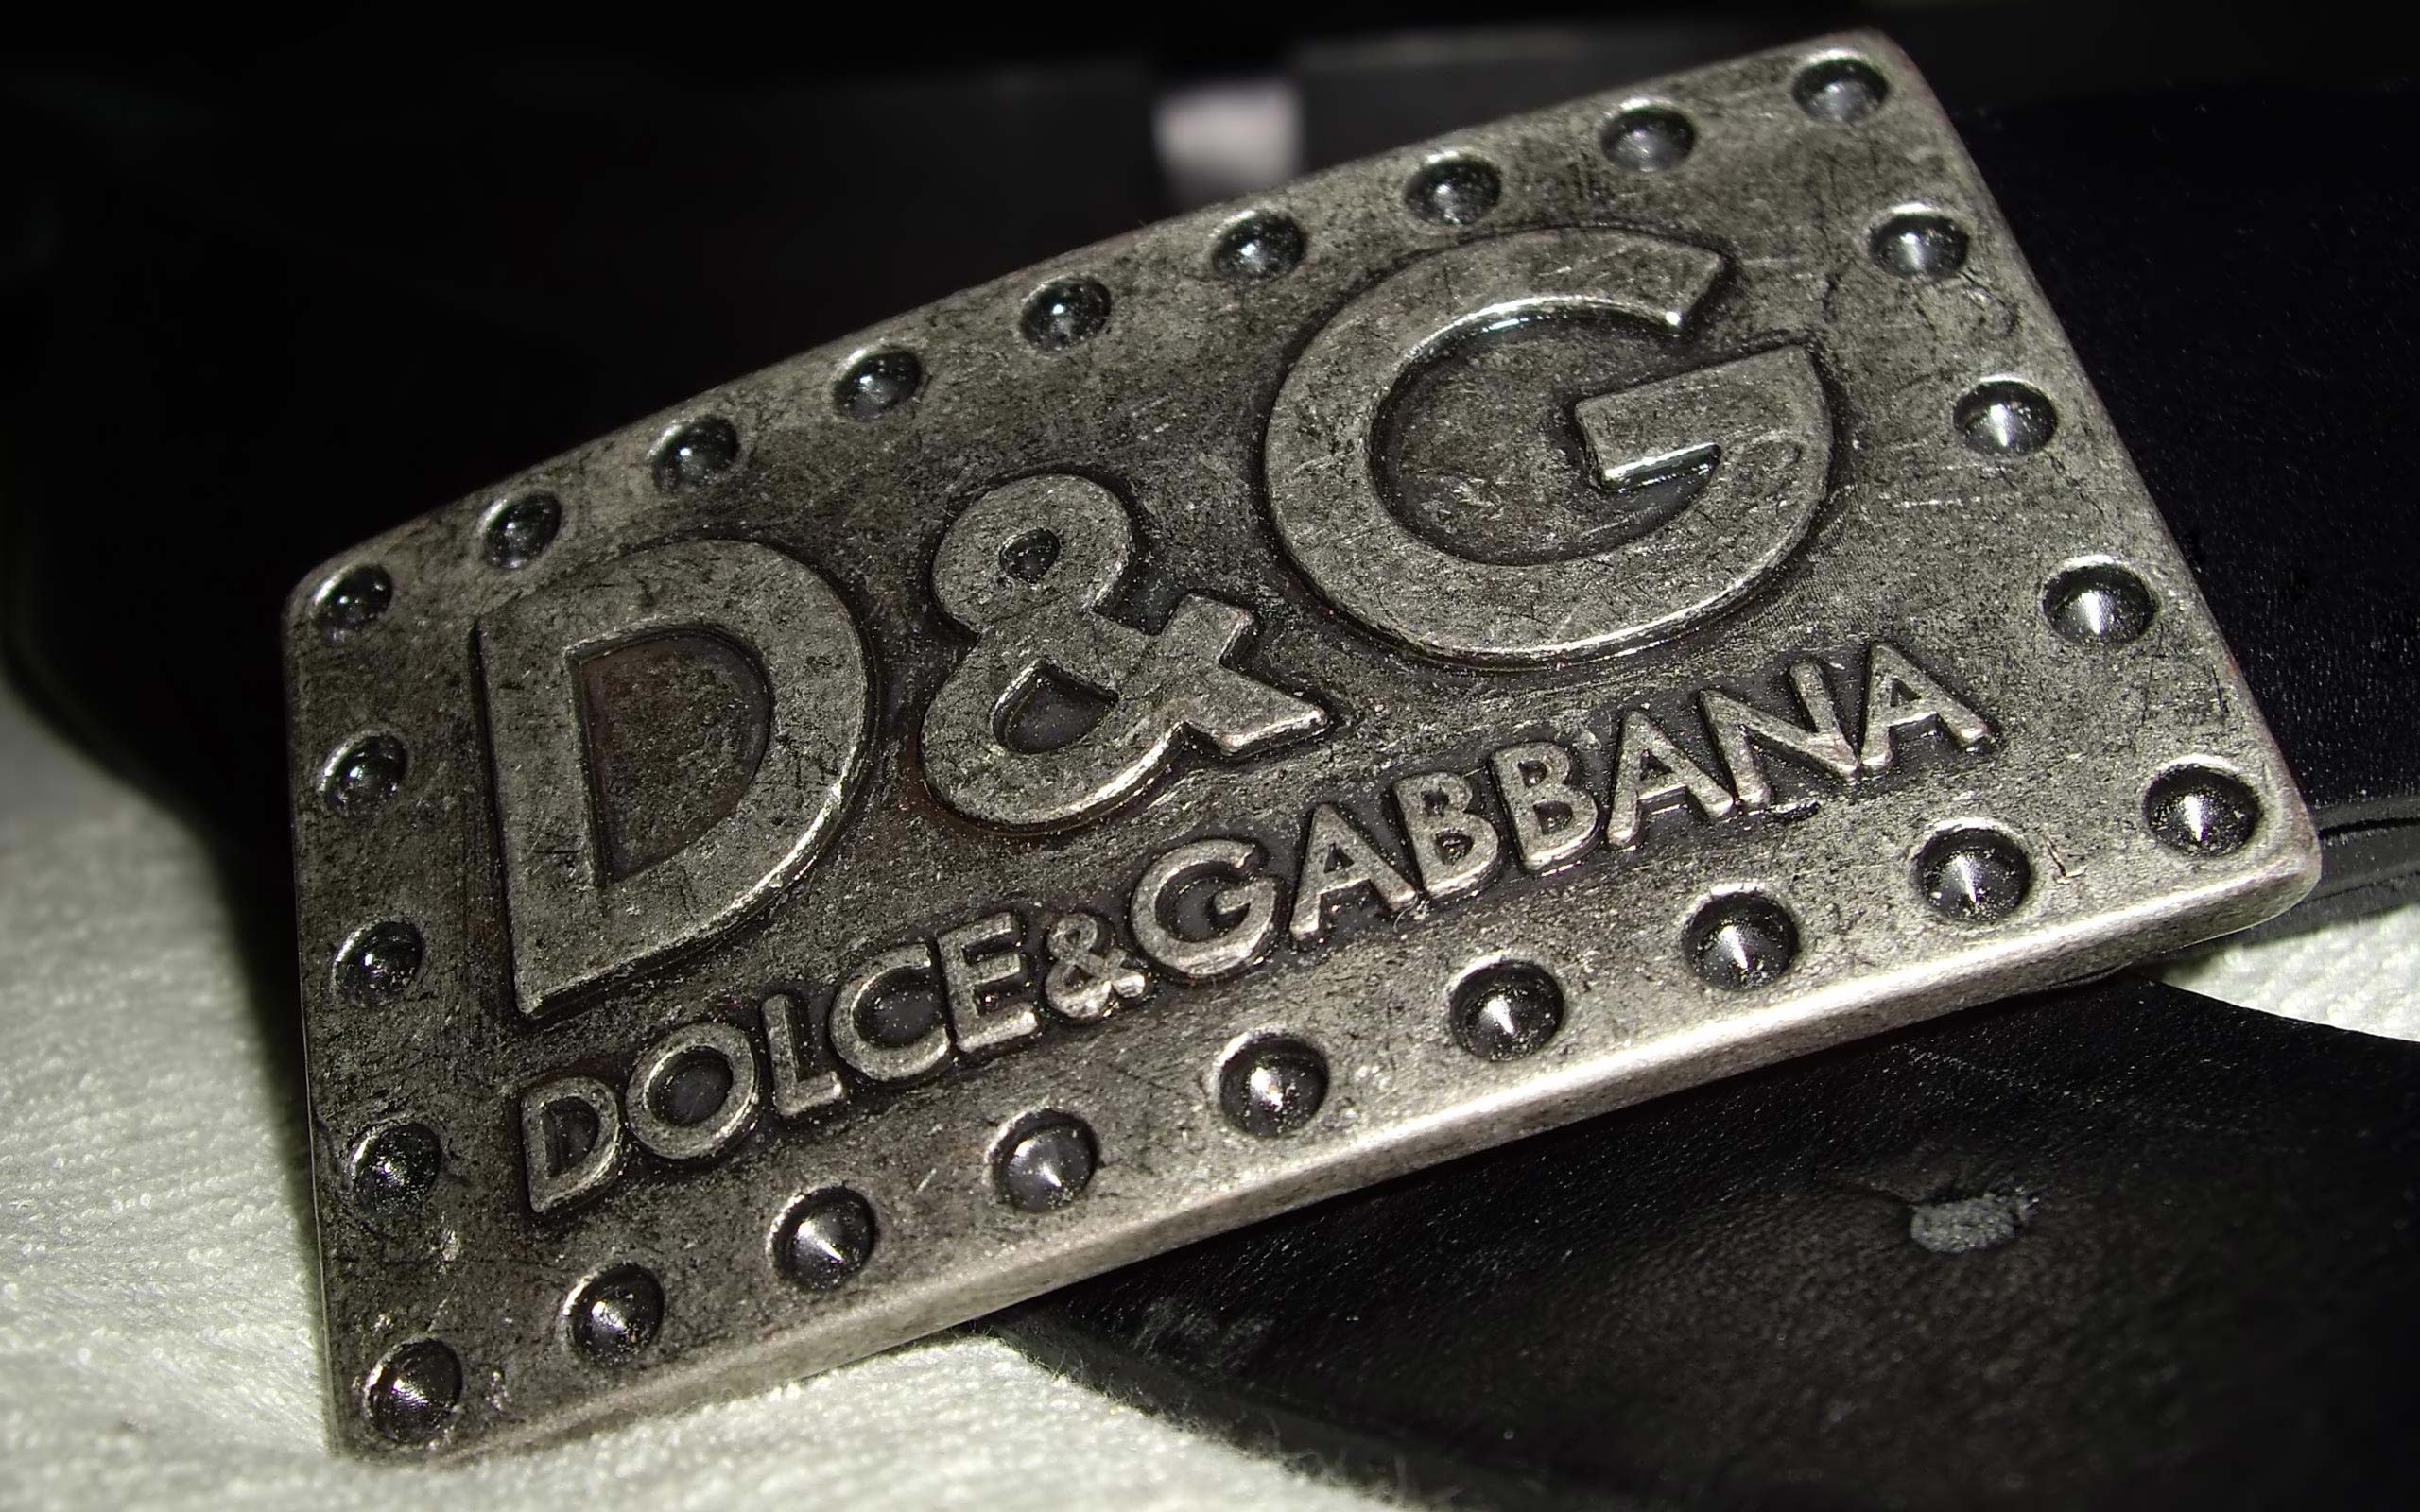 Descargar fondos de escritorio de Dolce Gabbana HD